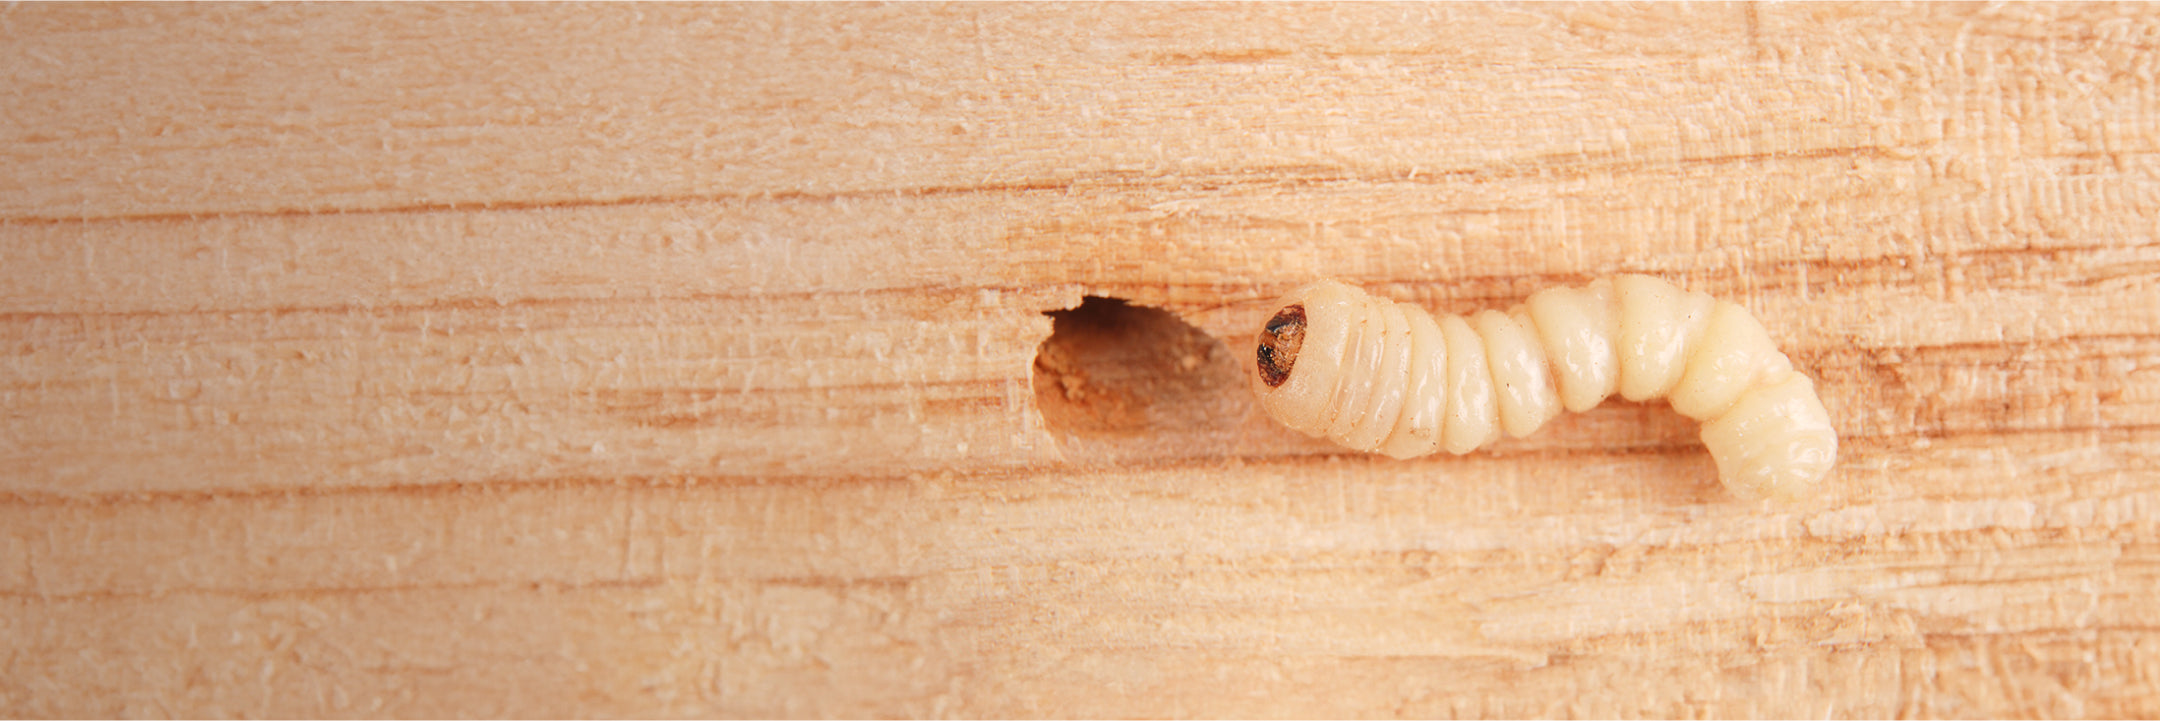 Holzwurm auf einem Stück Holz mit Loch